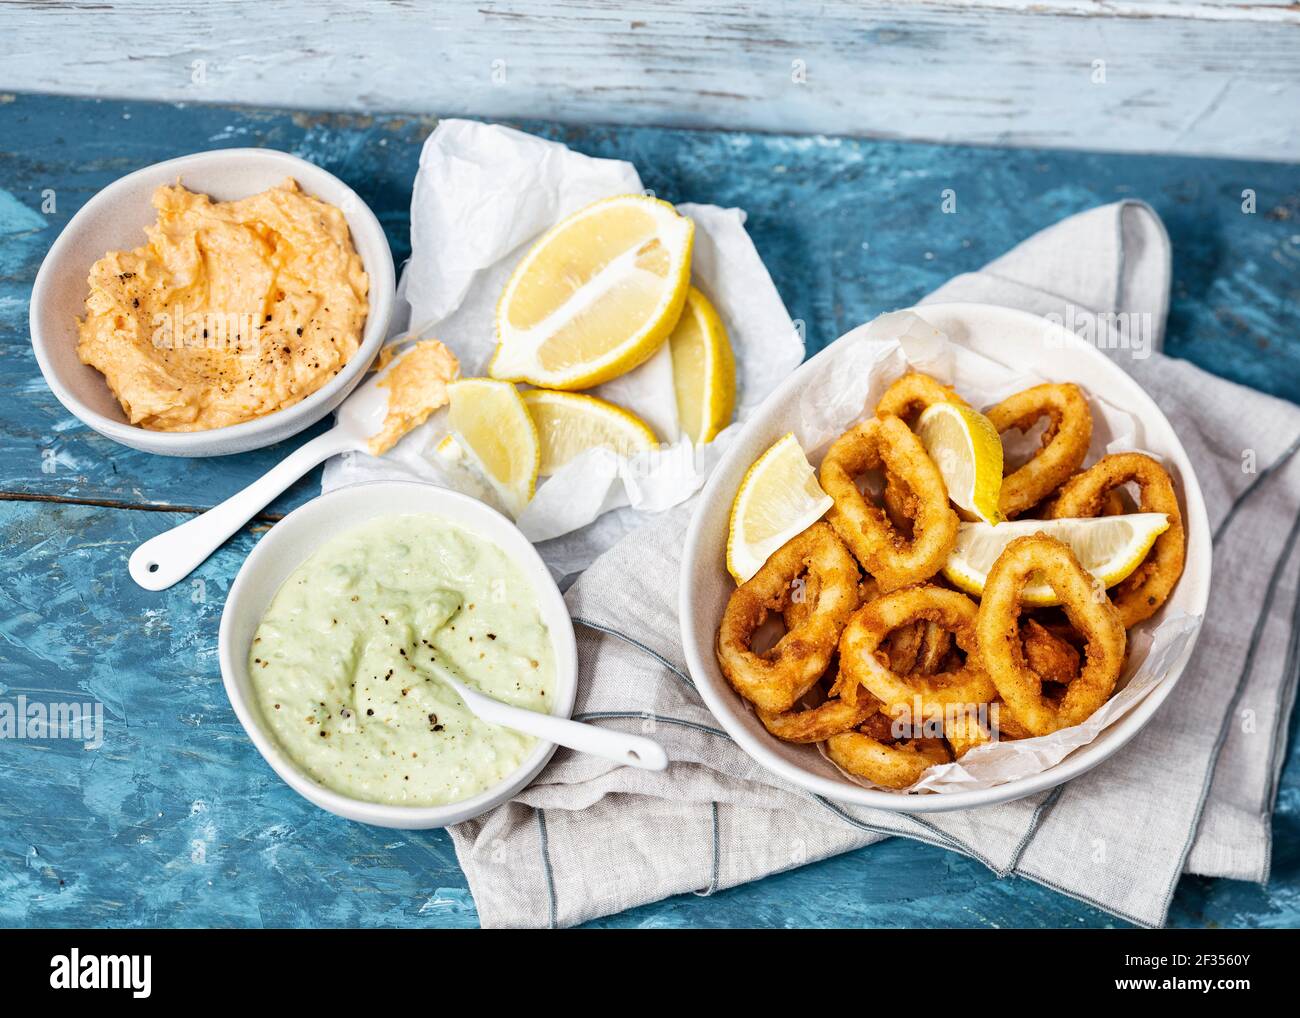 Les calamars frits sont accompagnés de droits d'aioli au Royaume-Uni ET EN IRLANDE UNIQUEMENT, AUTRES CONTACTS À DROITE EWASTOCK.COM Banque D'Images